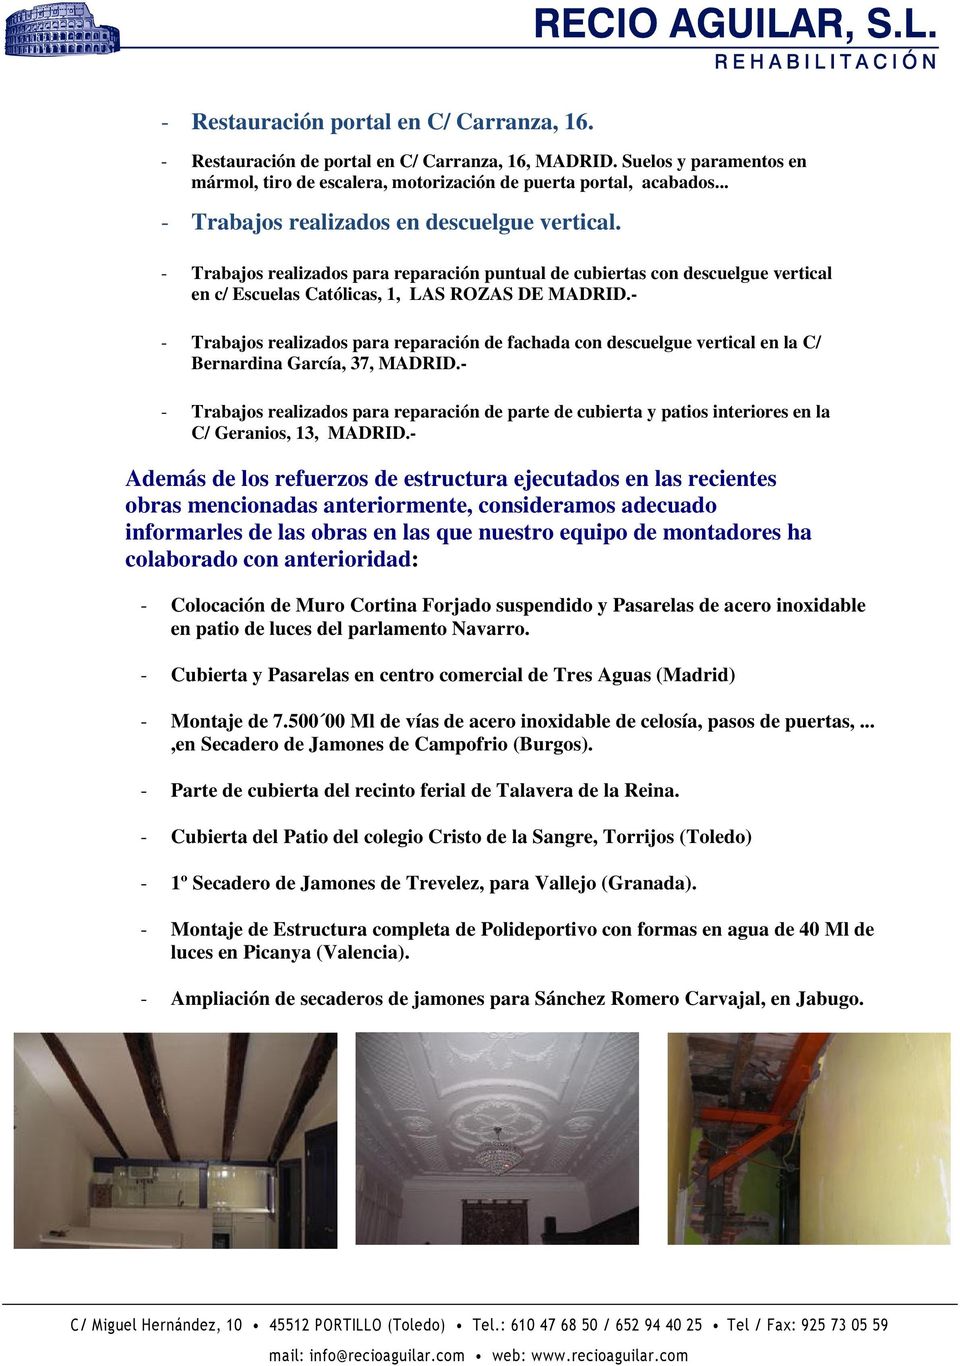 - - Trabajos realizados para reparación de fachada con descuelgue vertical en la C/ Bernardina García, 37, MADRID.